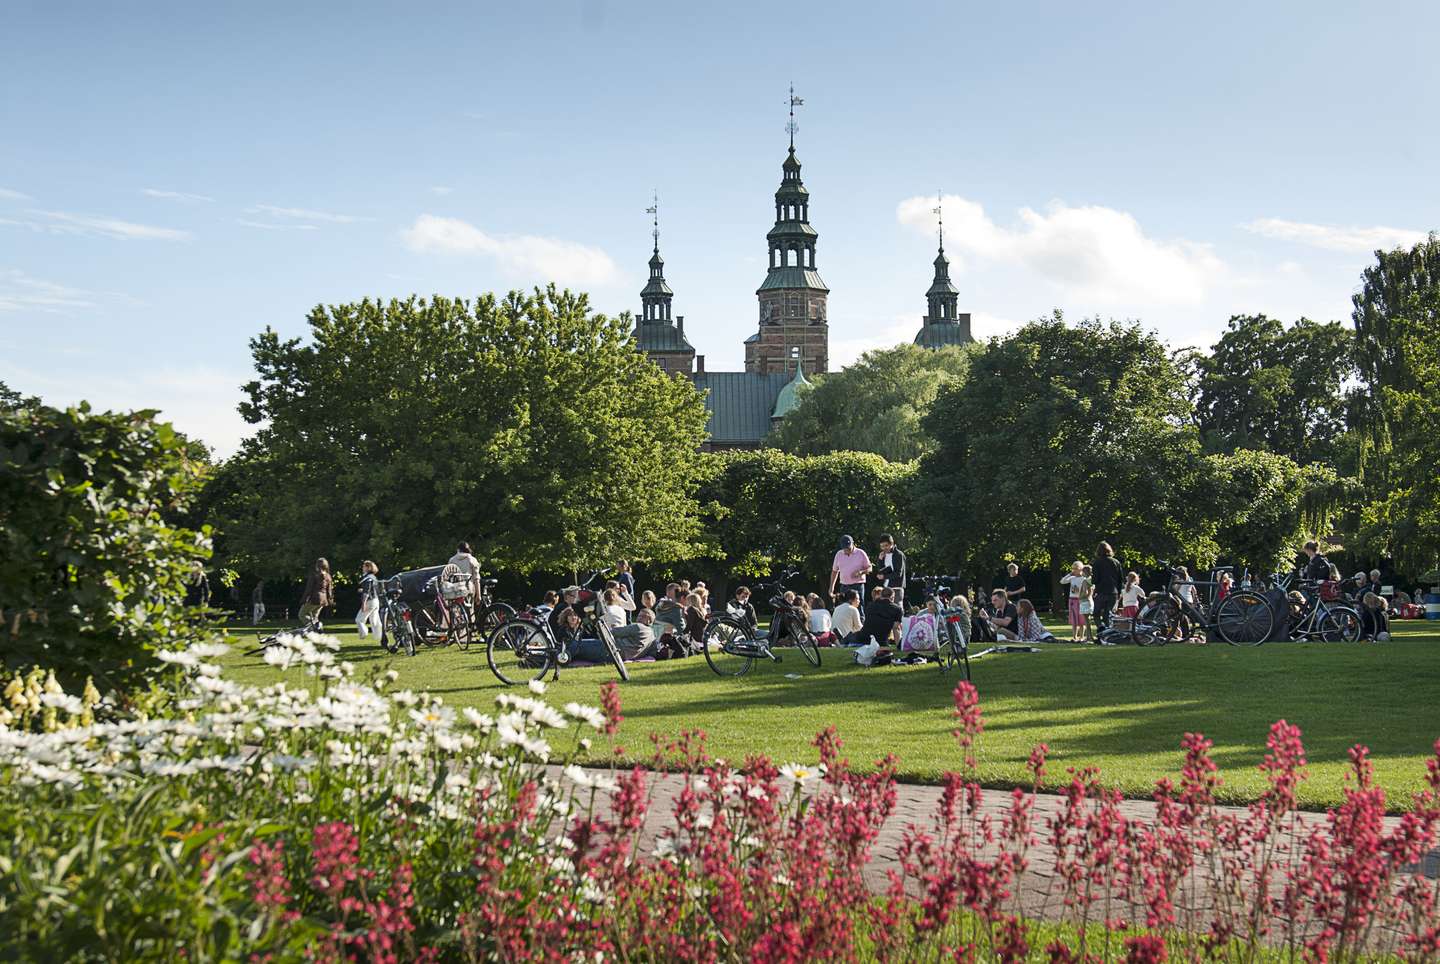 The King's Garden and Rosenborg Castle. Photo: Thomas Rahbek, SLKE